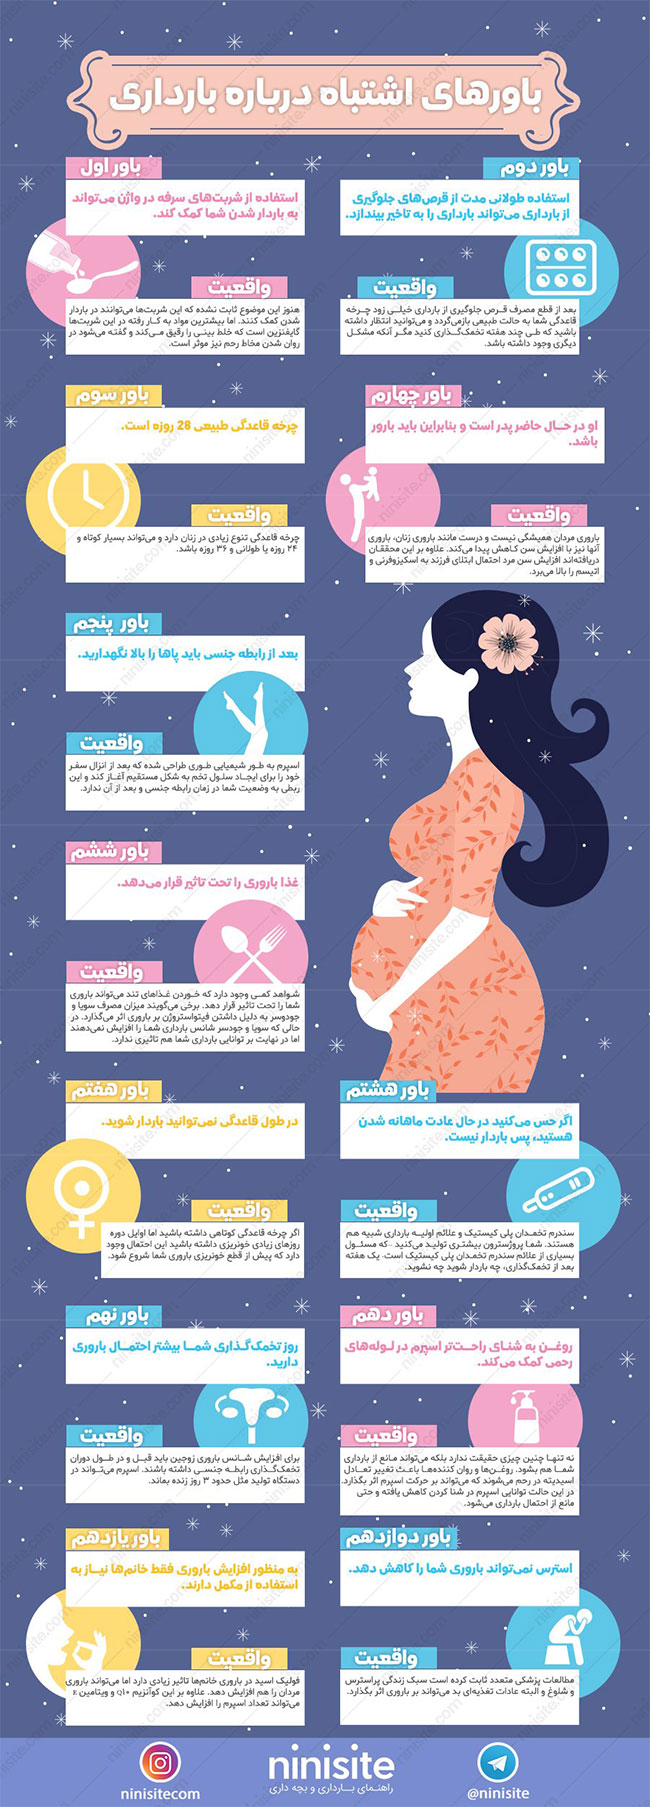 اینفوگرافی: باور‌های اشتباه درباره بارداری